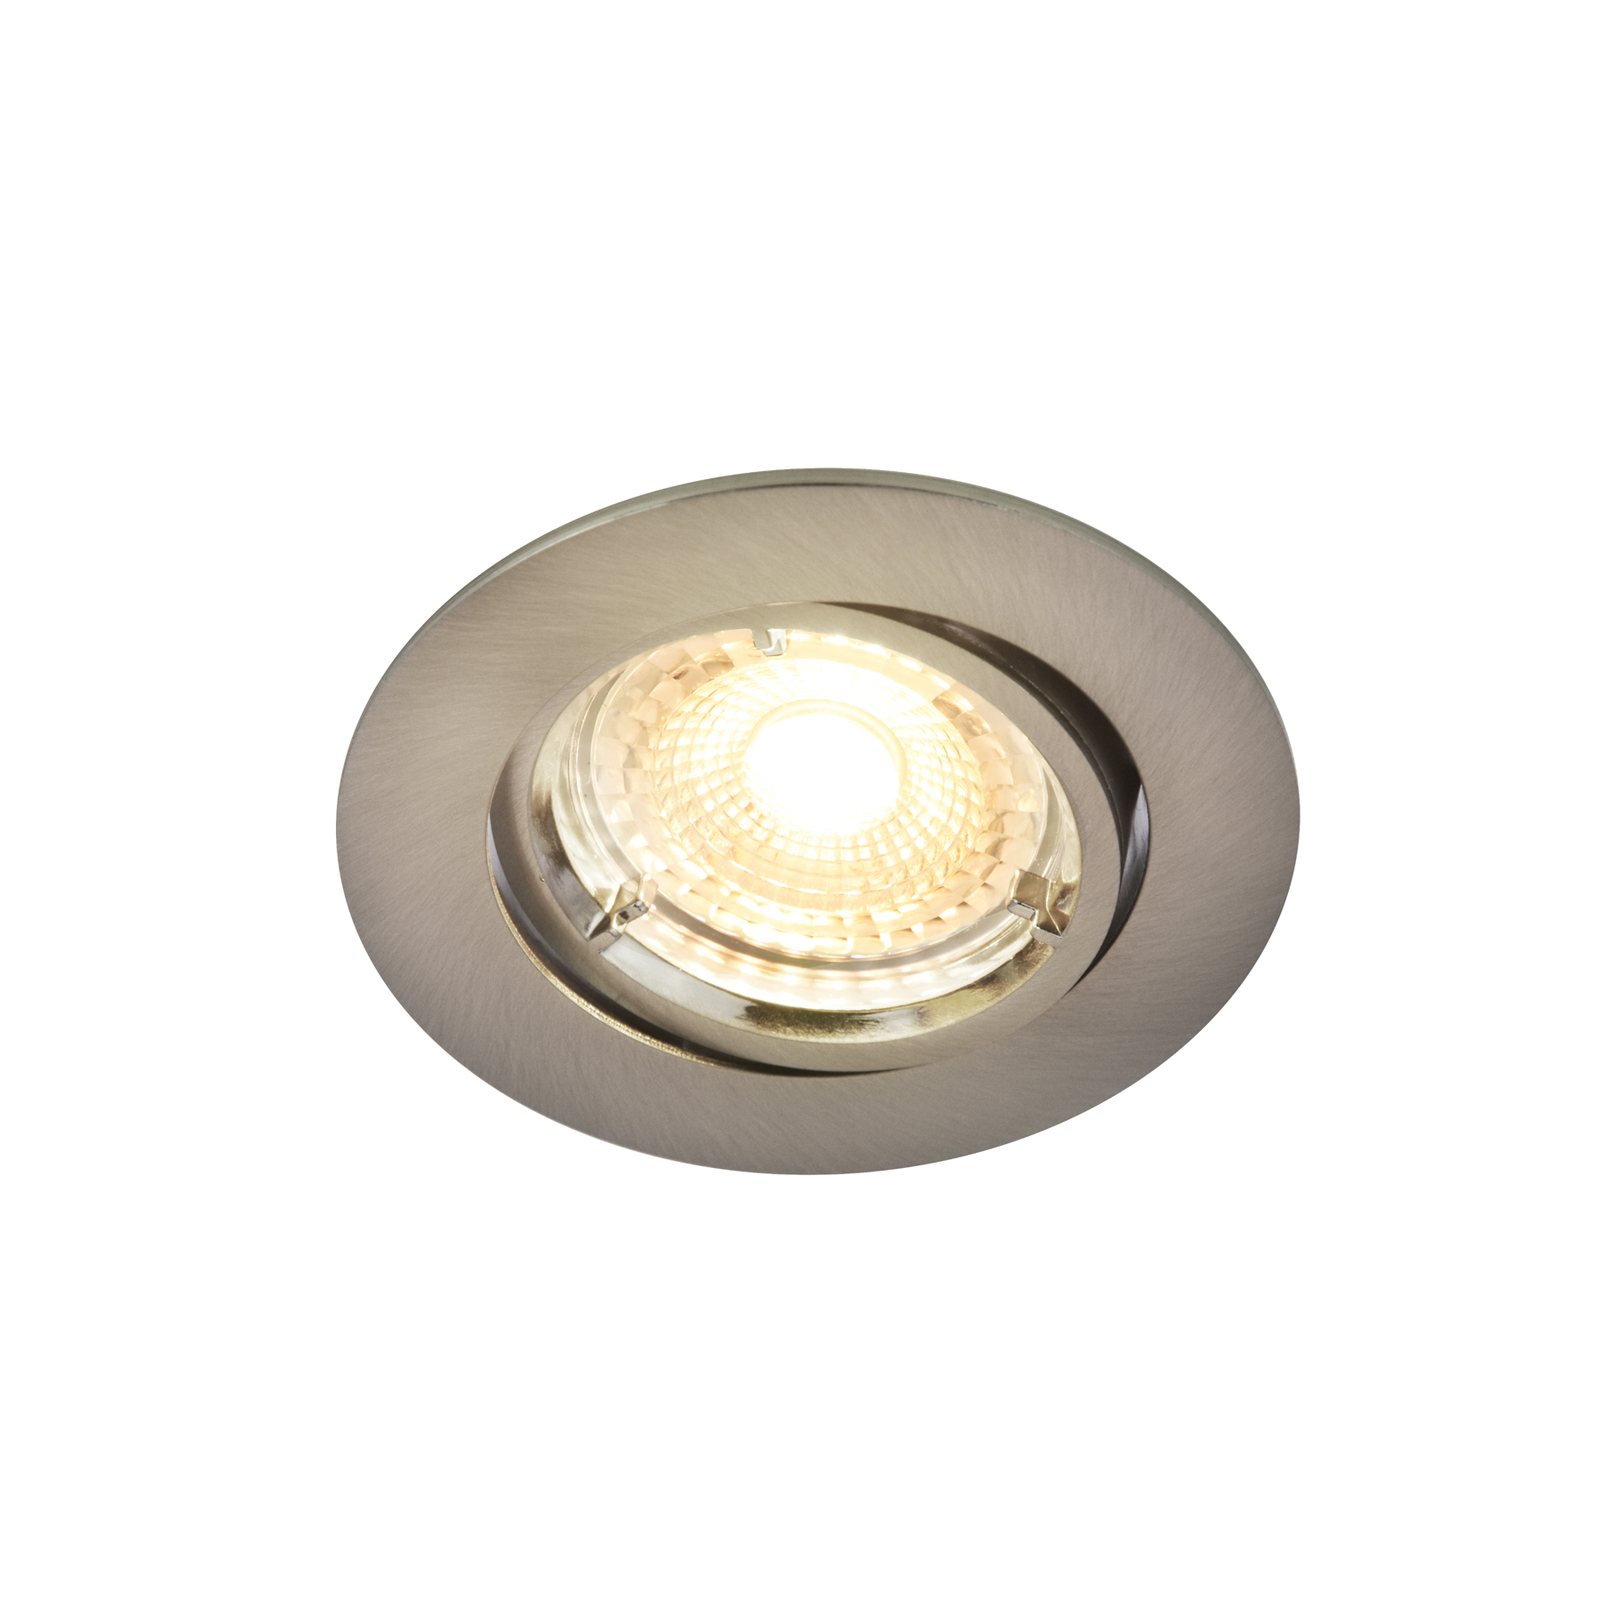 LED-Einbaulampe Carina Smart, 3er, rund, nickel